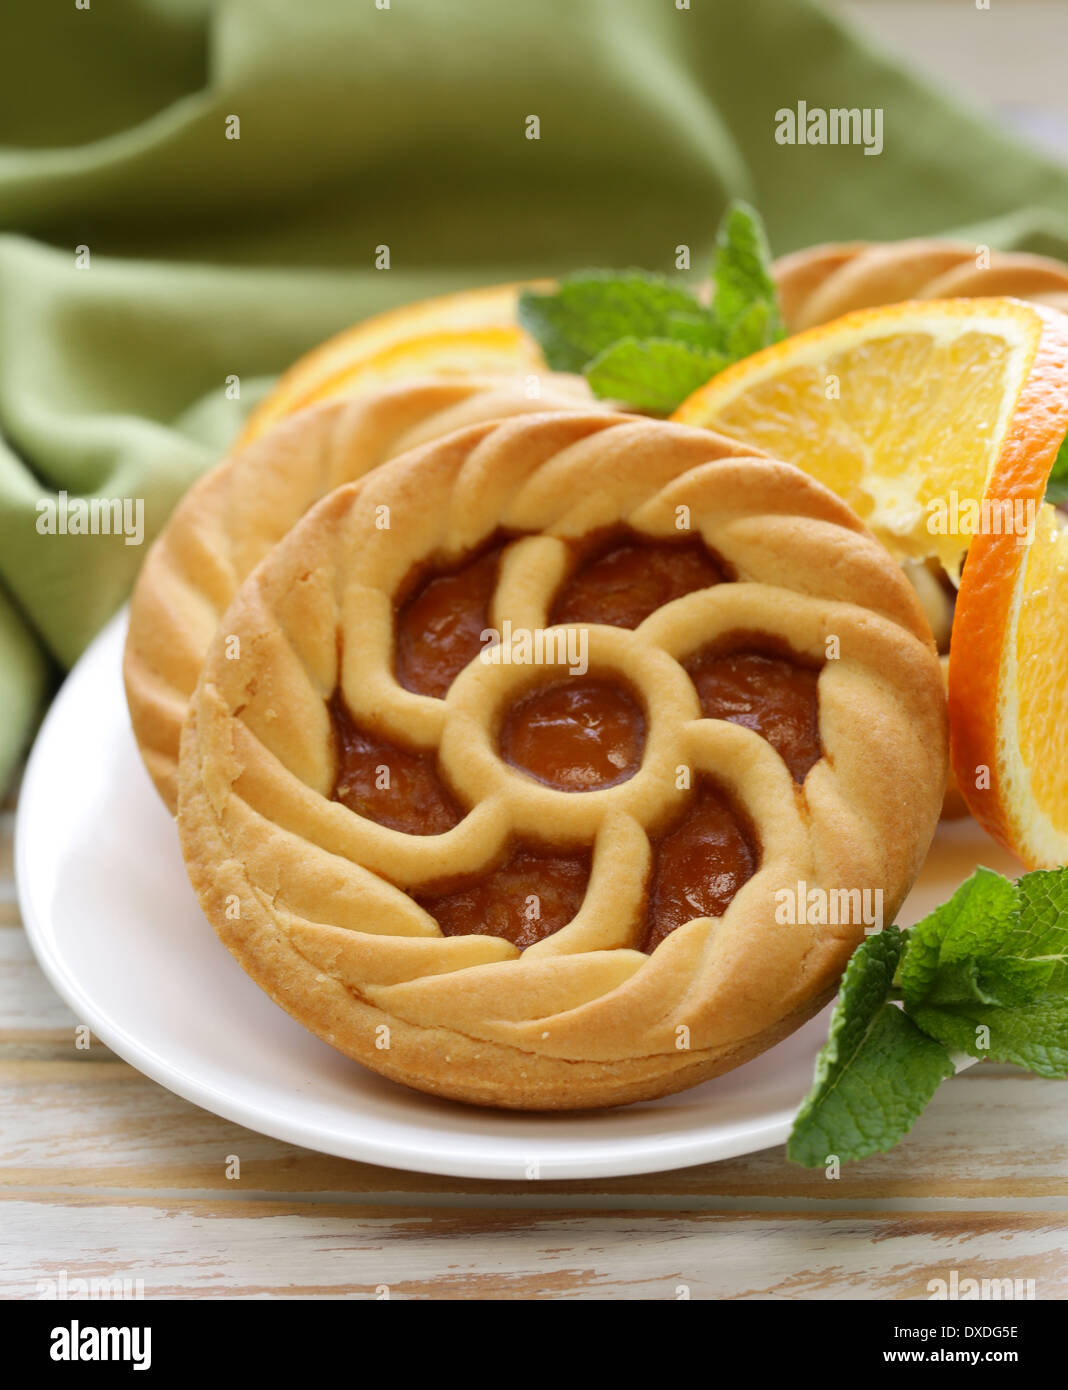 mini dessert tarts with orange on wooden table Stock Photo